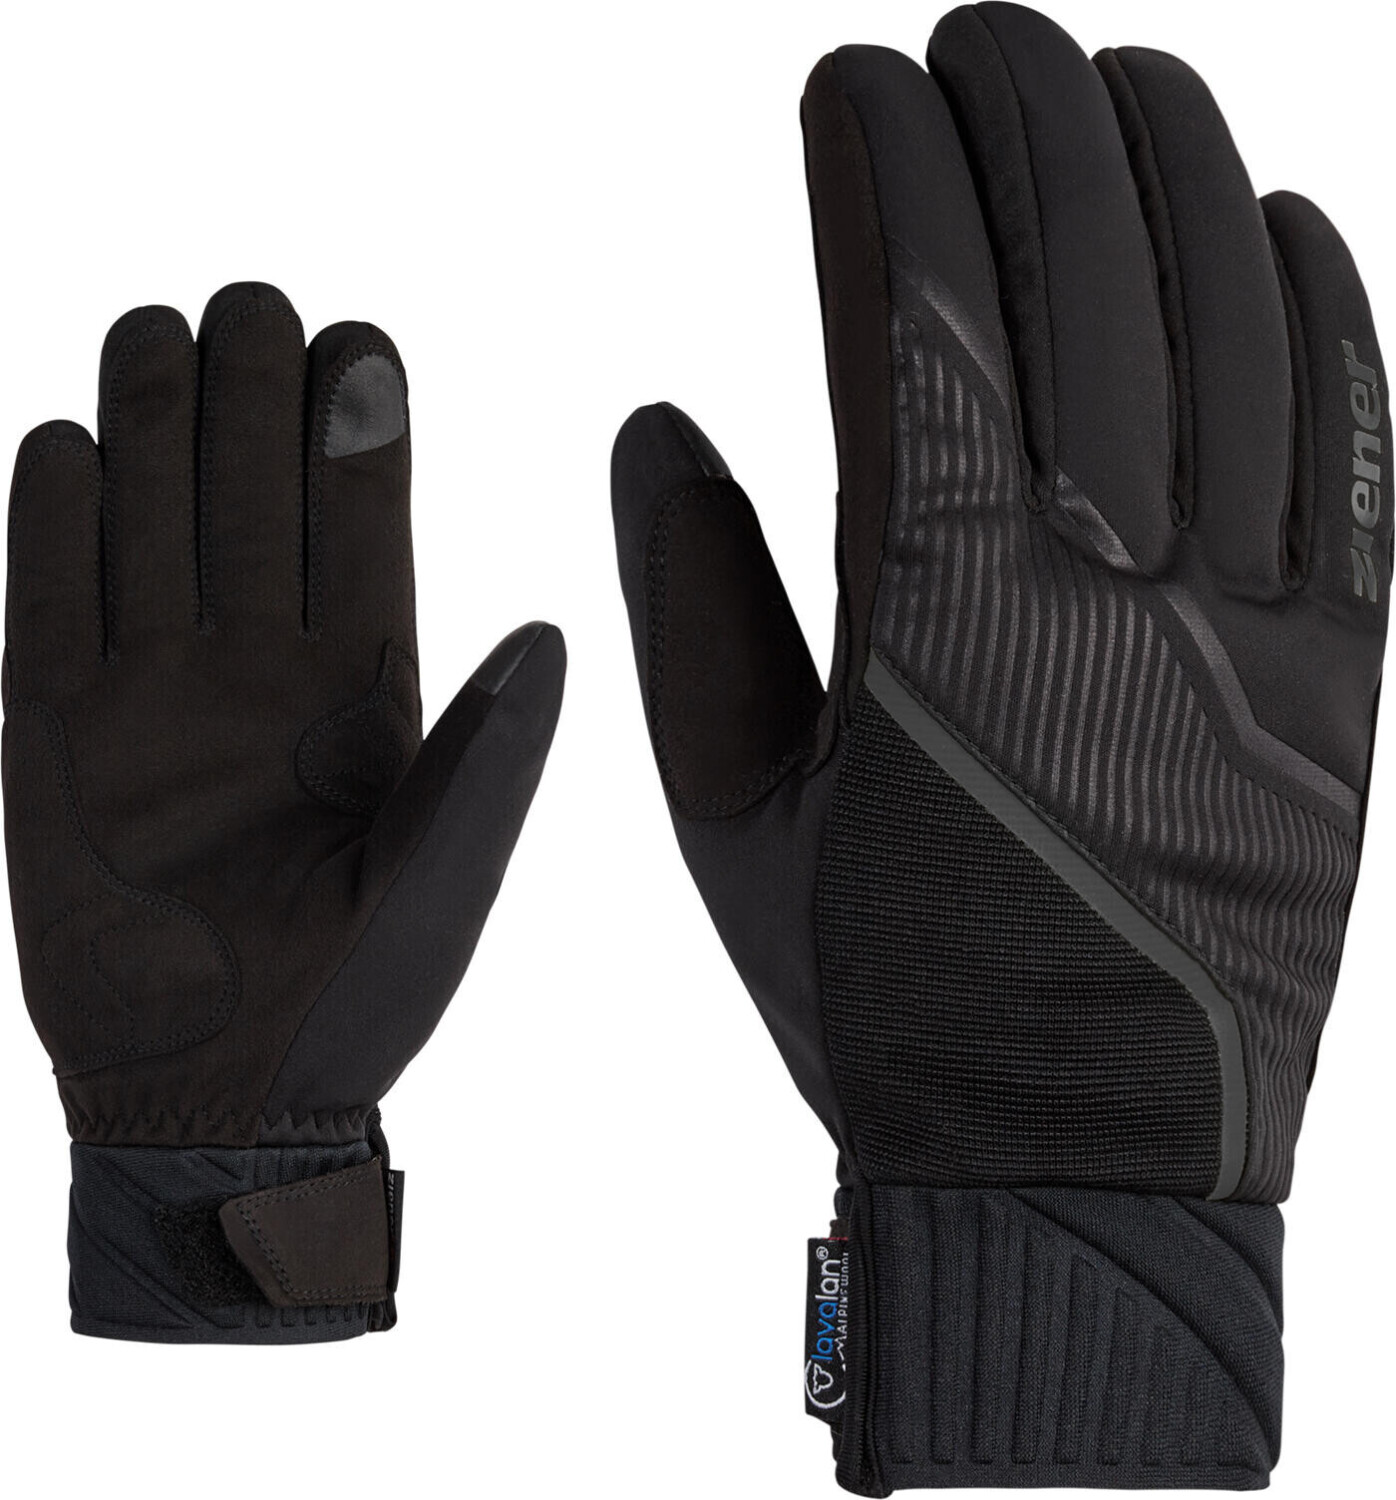 Ziener Uzomi Preisvergleich € Glove 30,00 AW ab bei | Touch Crosscountry